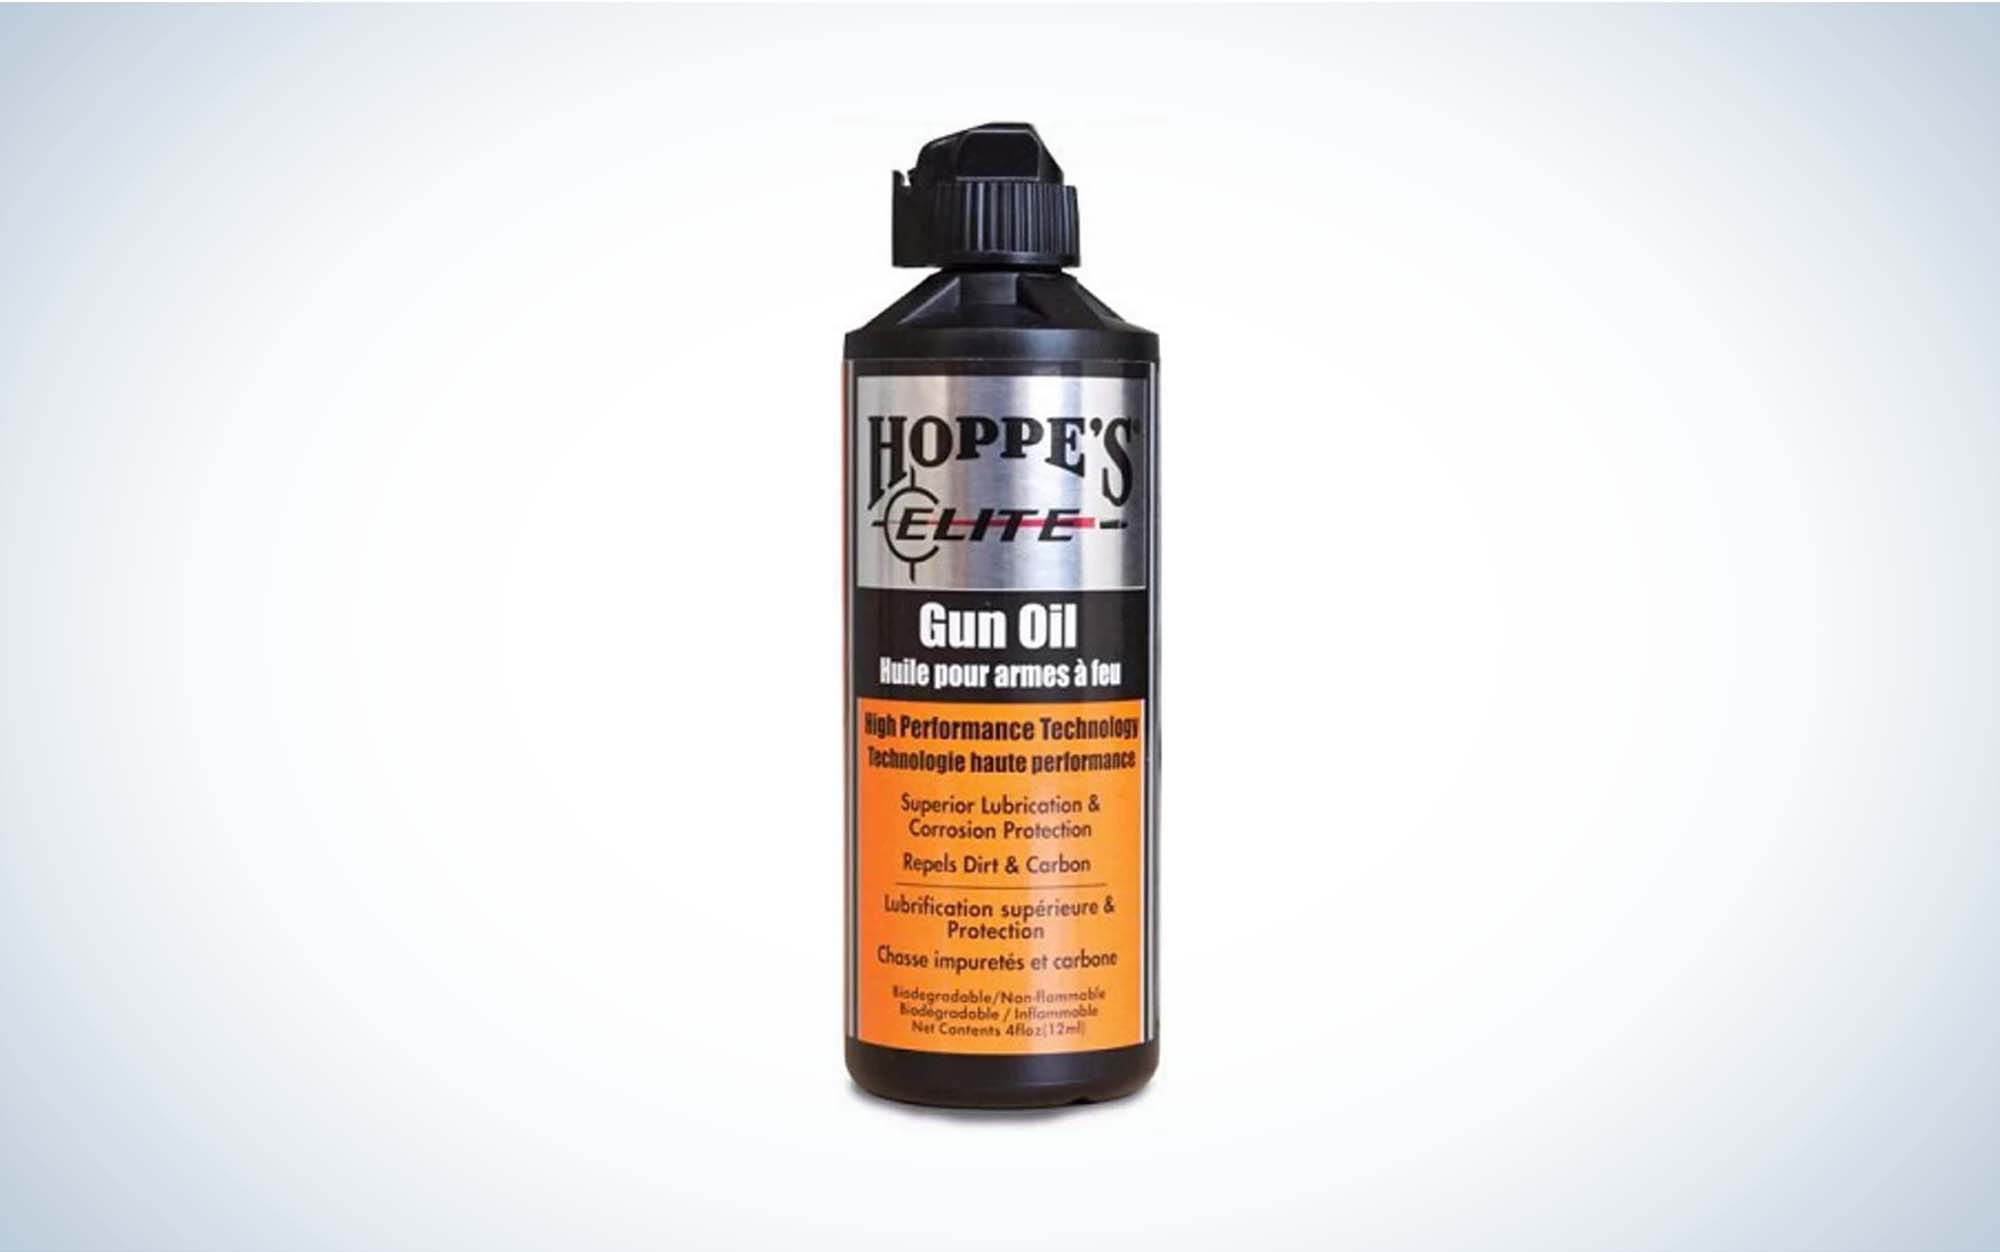 Hoppe’s Elite Gun Oil